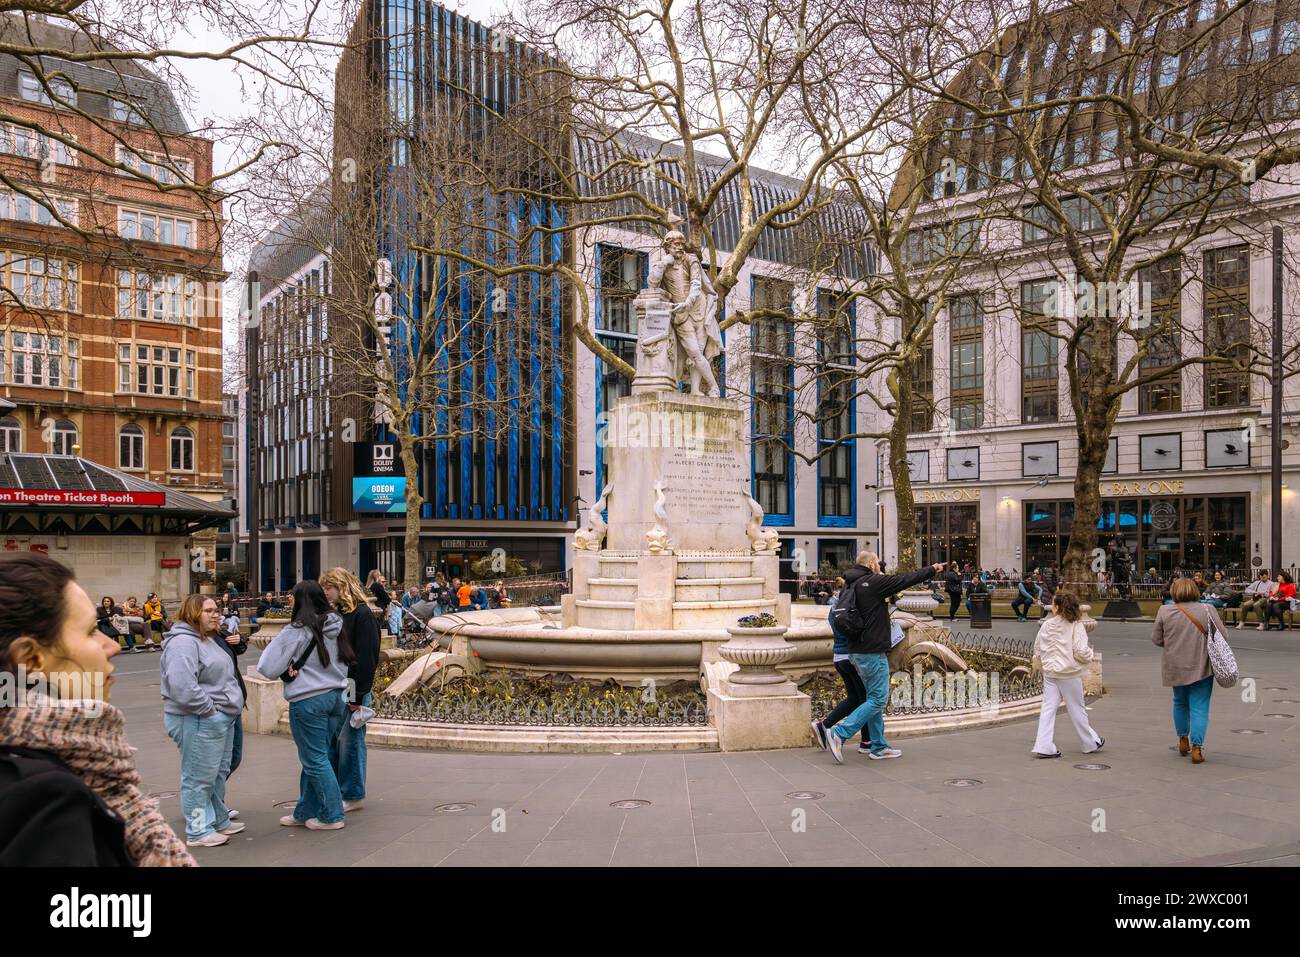 Une statue de William Shakespeare est la pièce maîtresse des Leicester Square Gardens à Londres depuis 1874. L'emblématique cinéma Odeon luxe à l'arrière. Banque D'Images